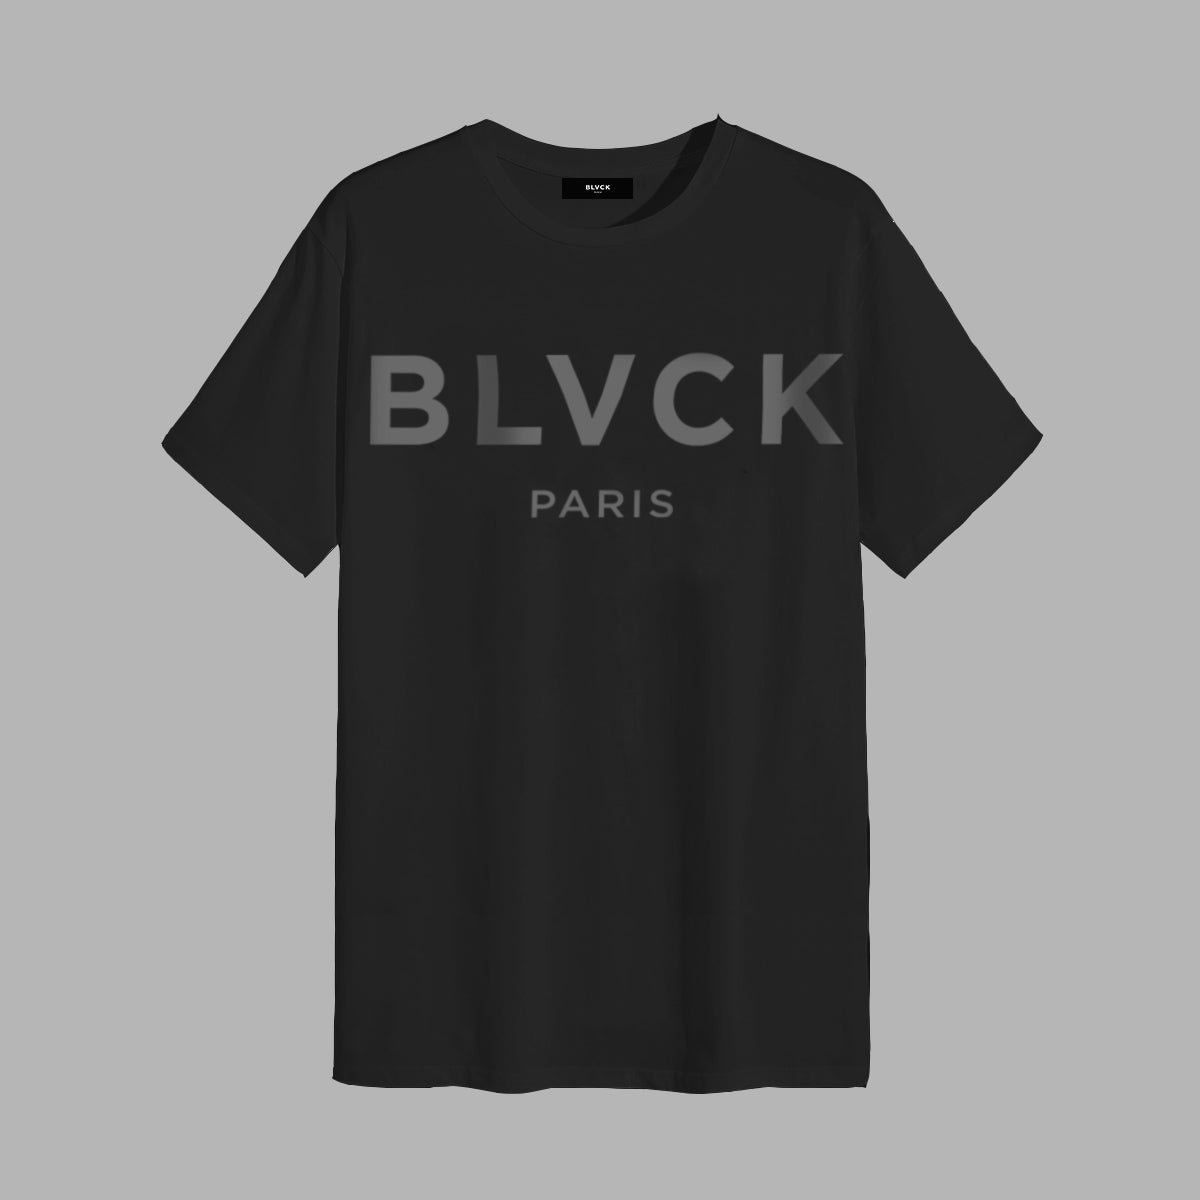 Embrace the Dark Side - Blvck Paris unveils the 'blackest black' tee